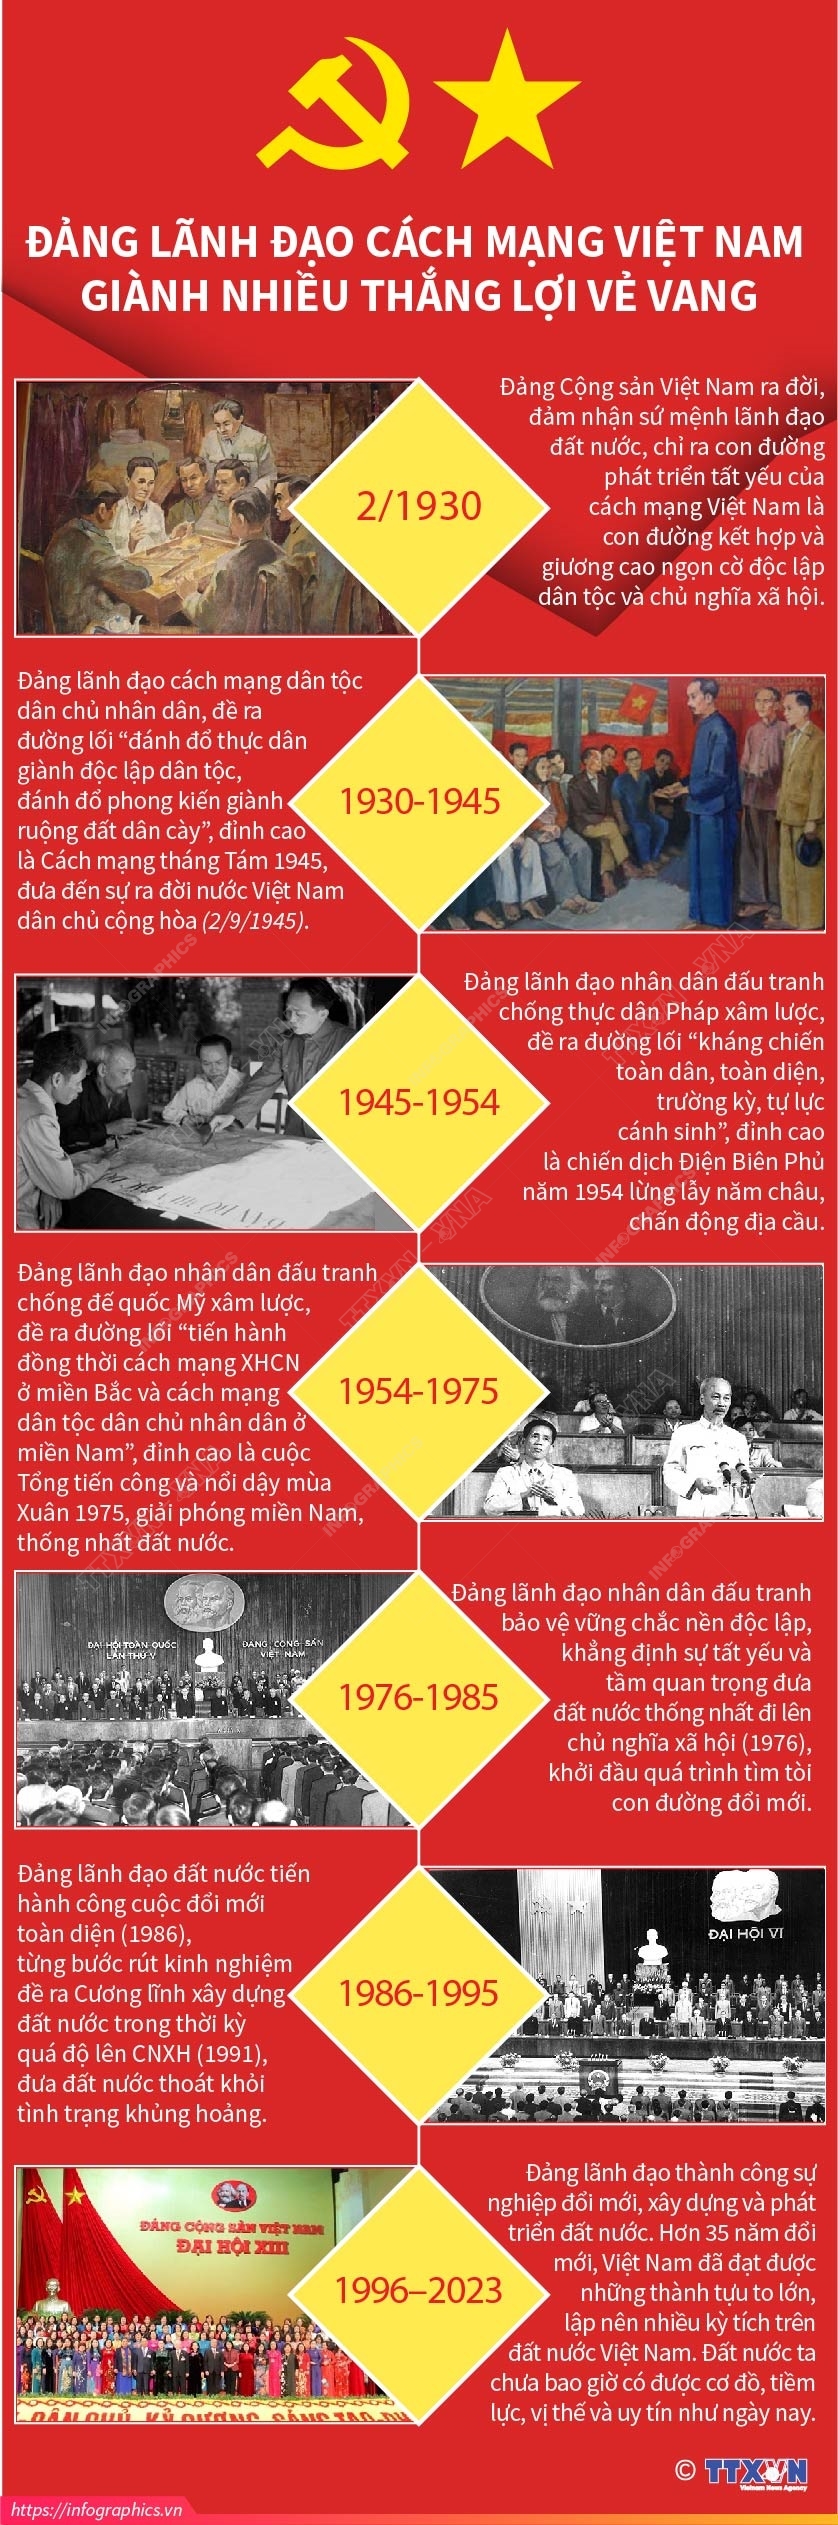 Kỷ niệm 93 năm Ngày thành lập Đảng: Tư tưởng Hồ Chí Minh về xây dựng Đảng và sự vận dụng trong tình hình hiện nay - Ảnh 2.